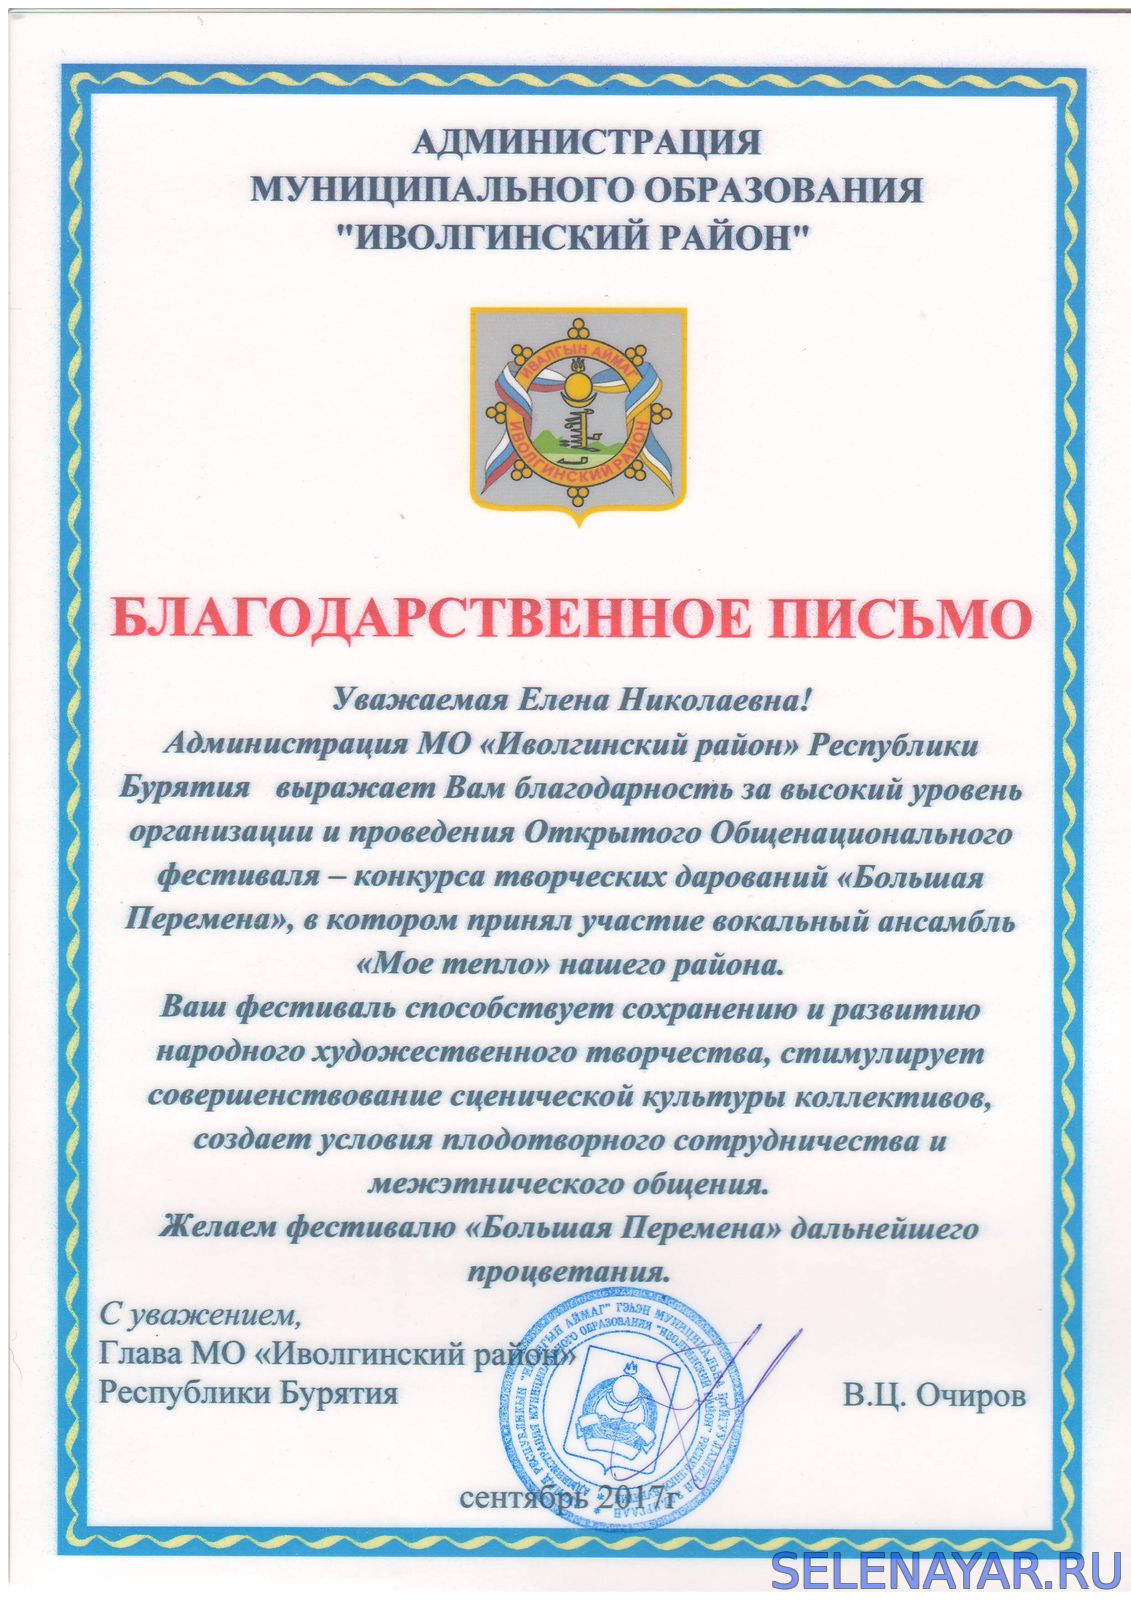 Благодарственное письмо от Администрации Иволгинского района